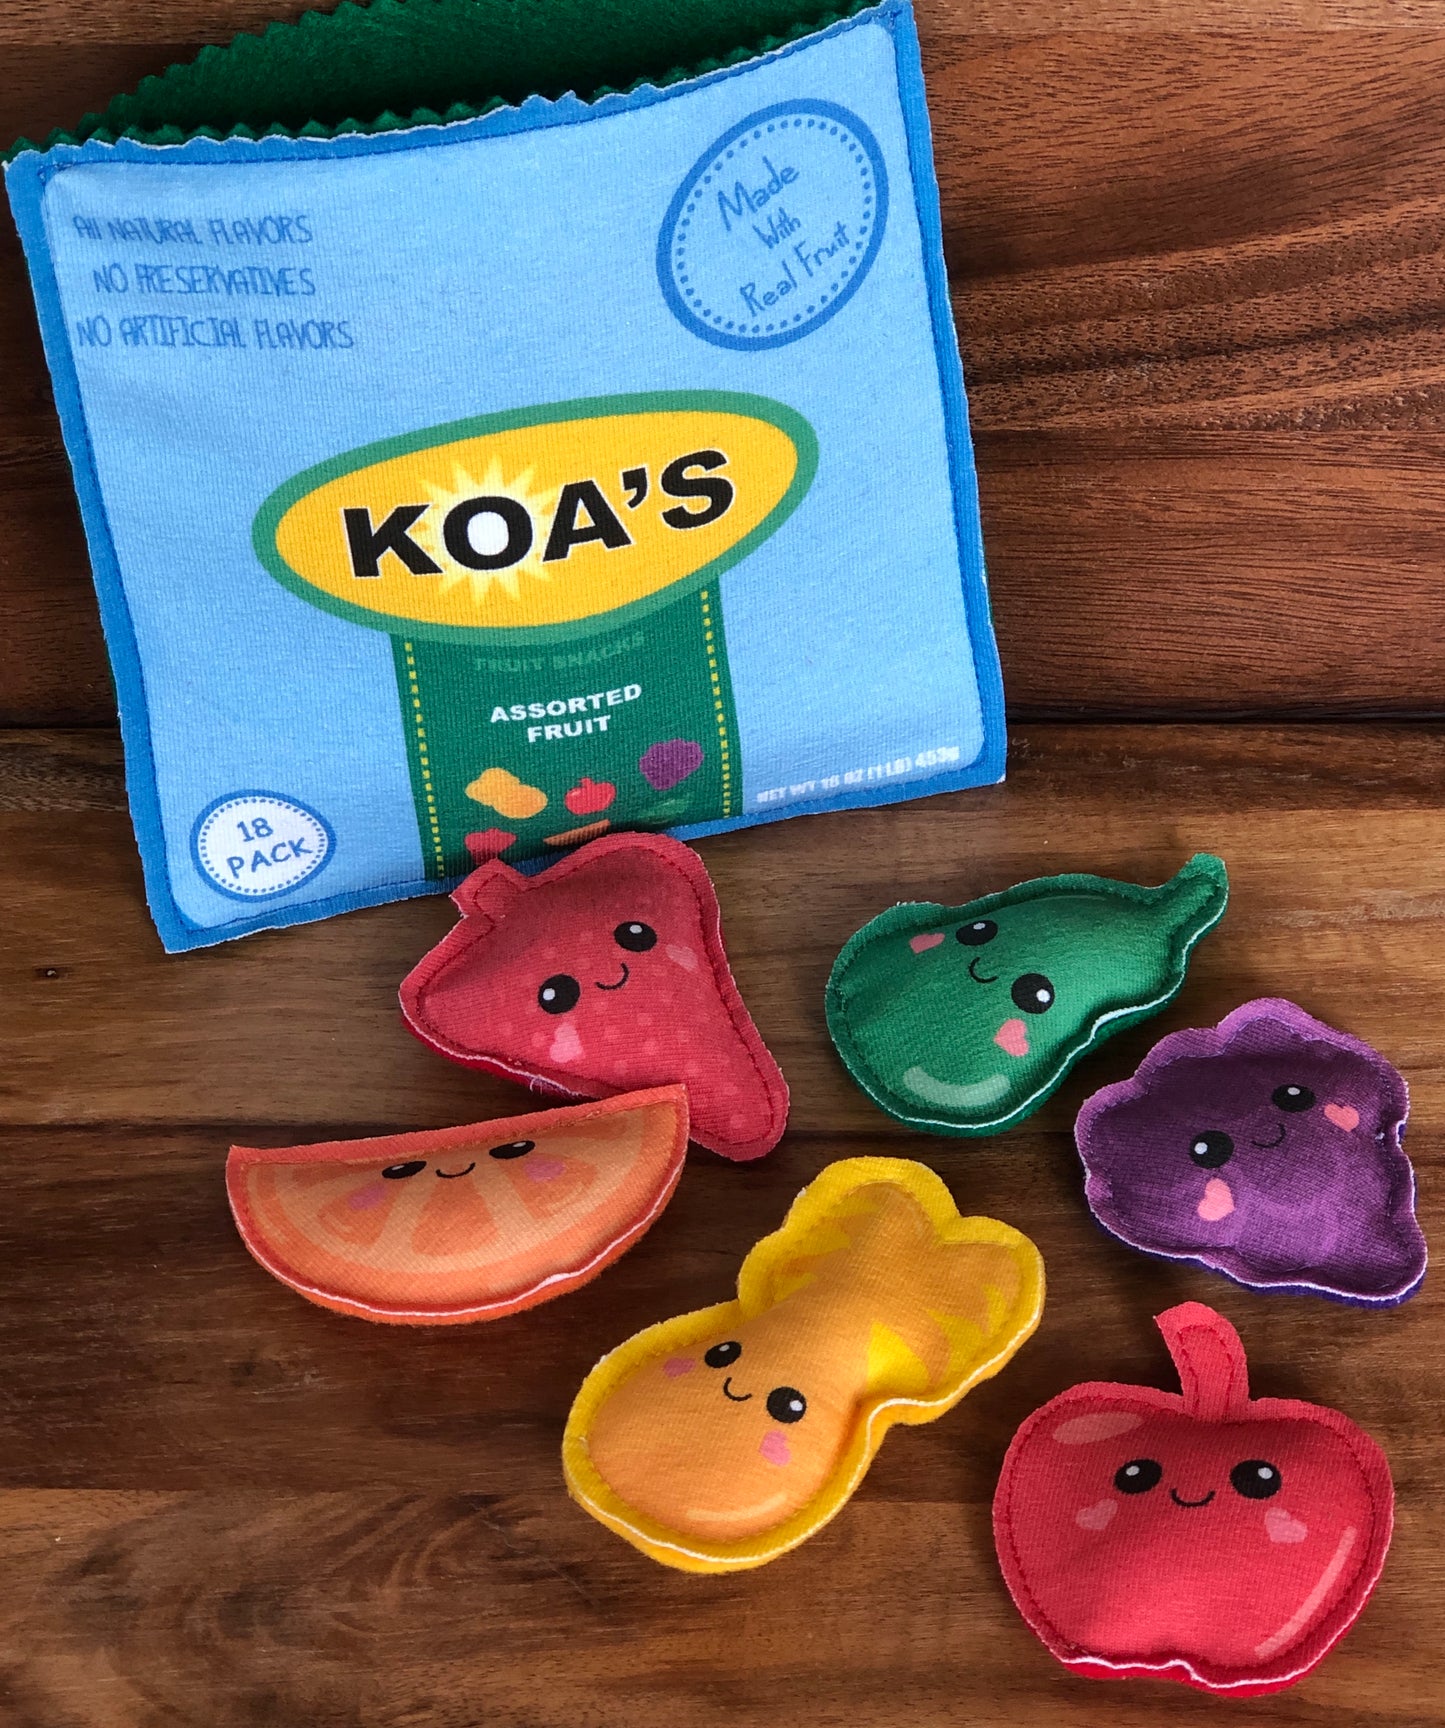 Koa's Fruit Snacks Panel